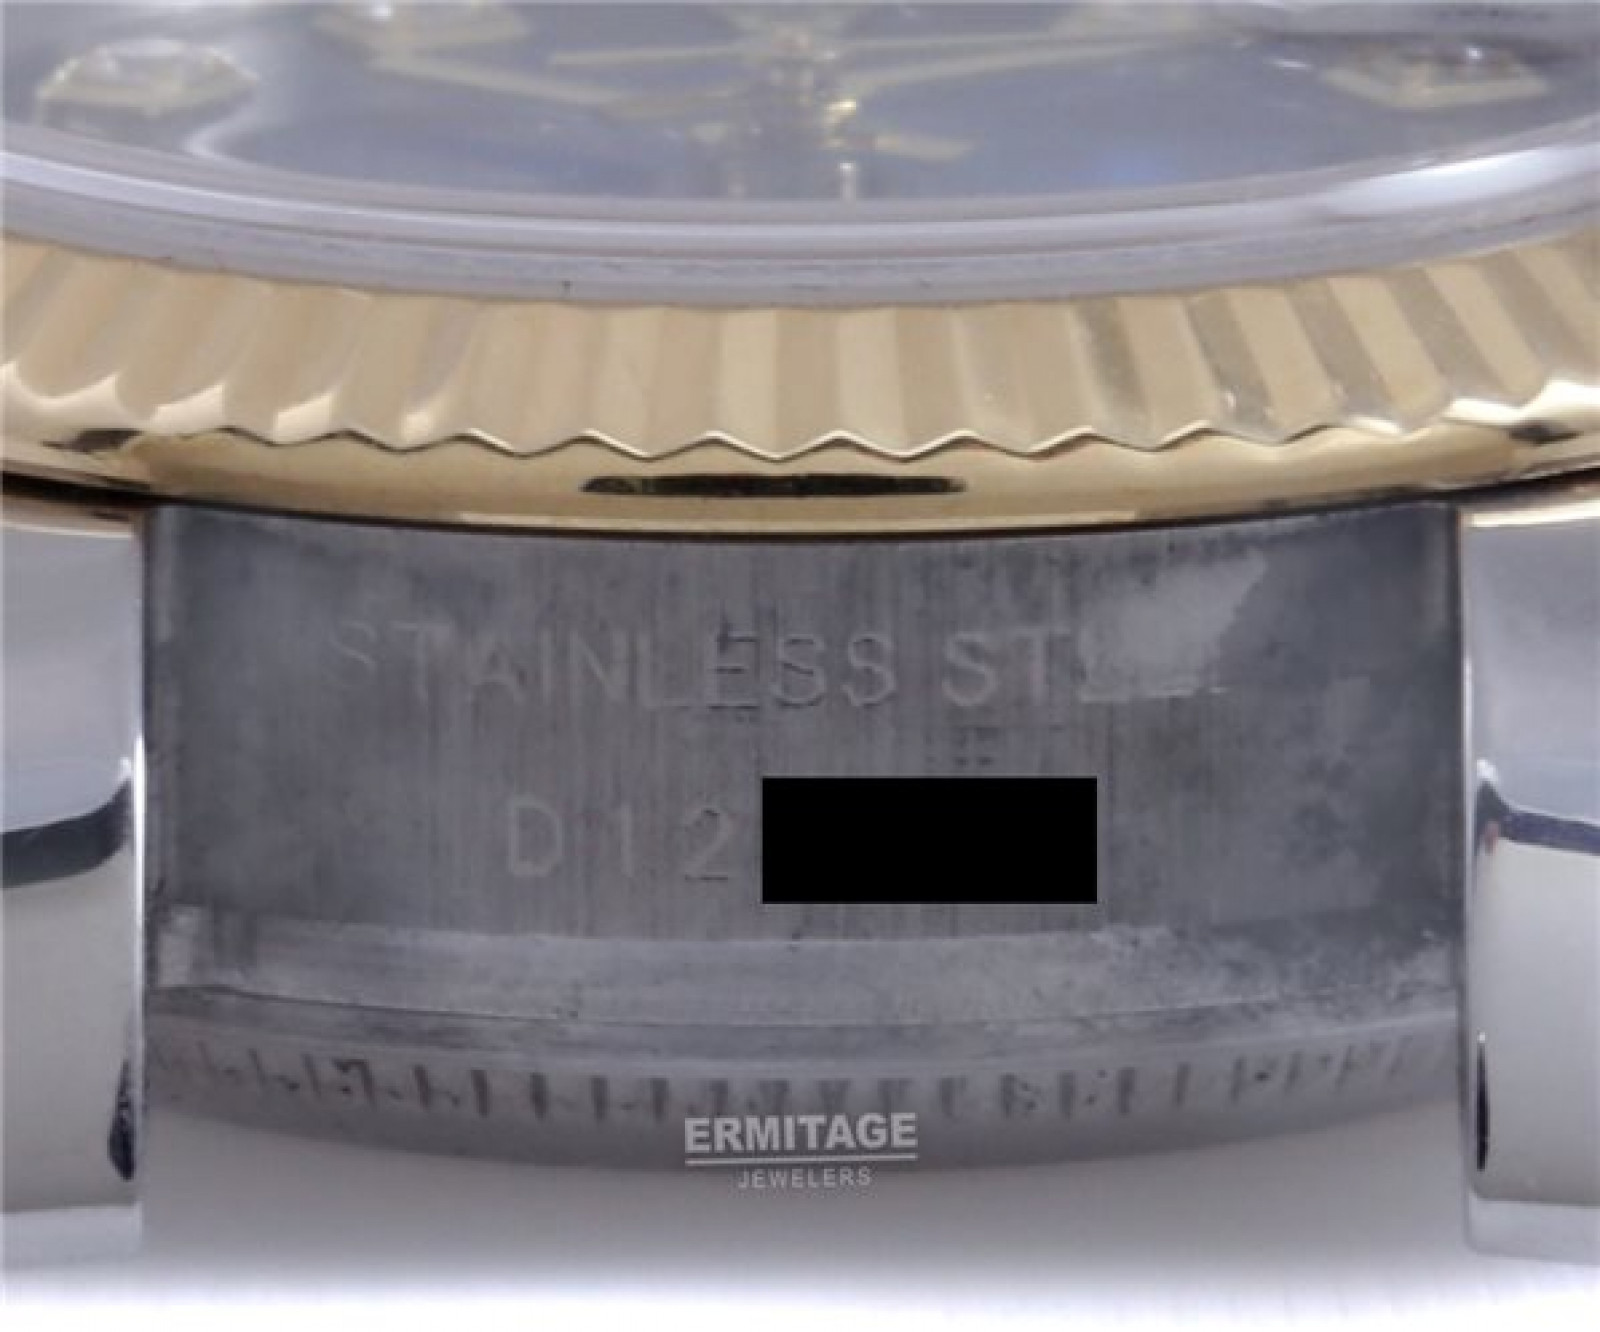 Vignette Diamond Dial Rolex Datejust 179173